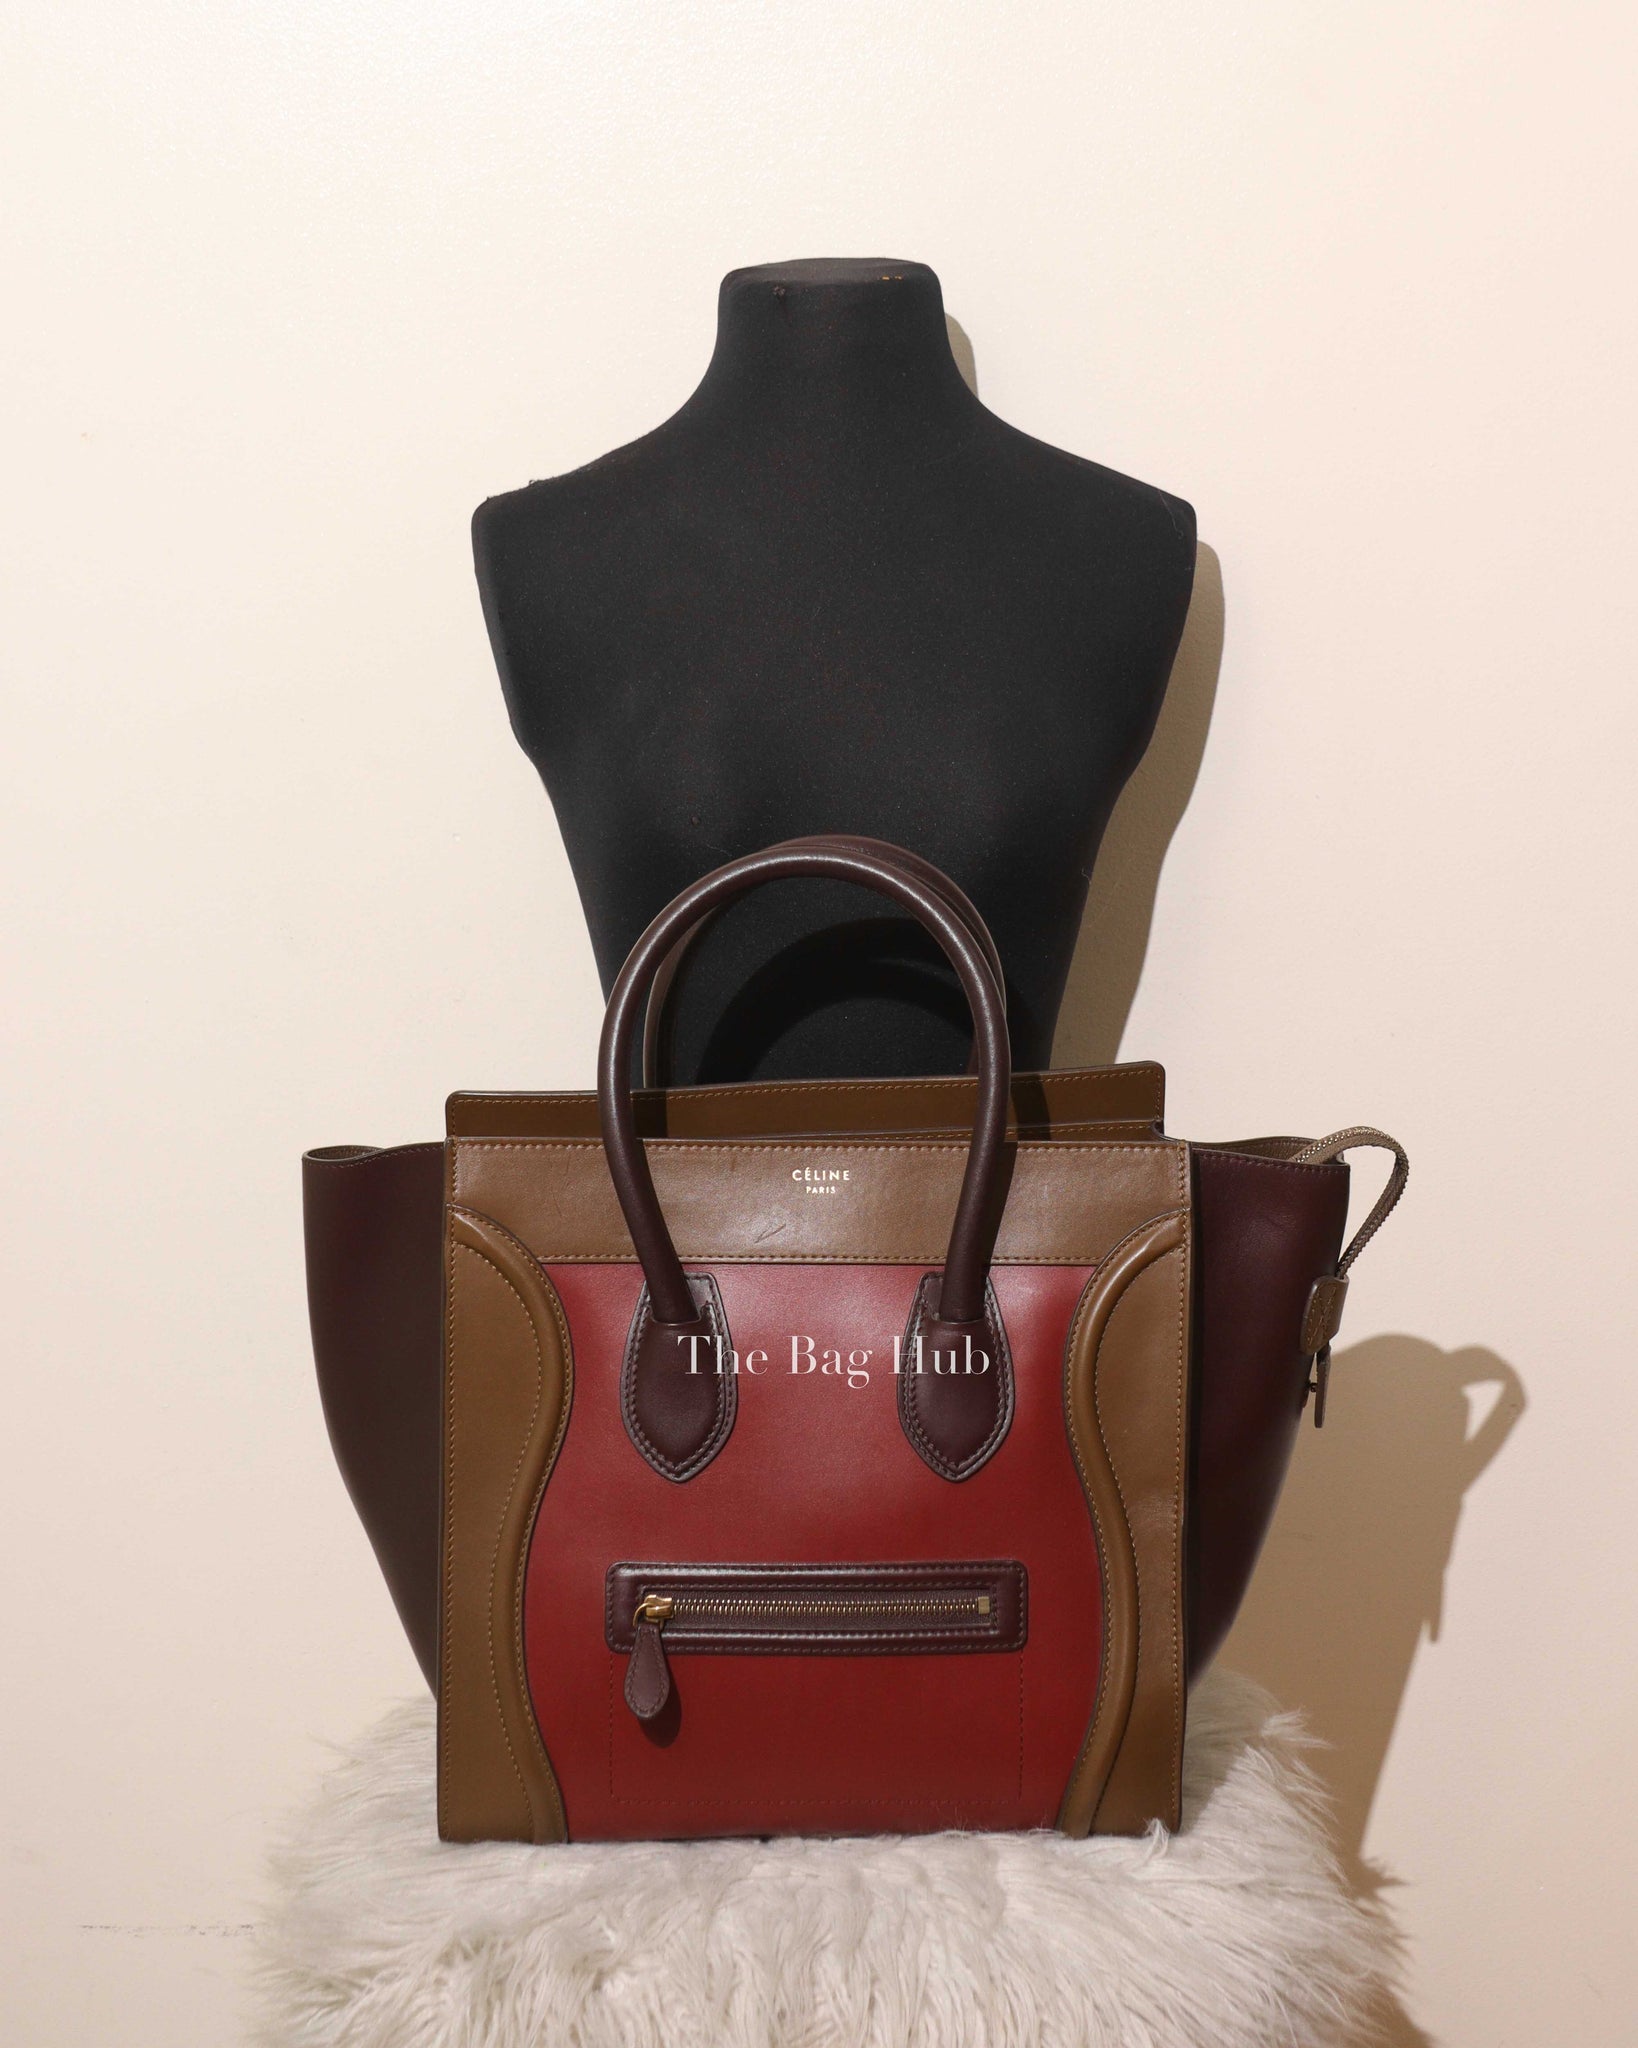 Celine Tan/Maroon/Red Leather Mini Luggage Bag